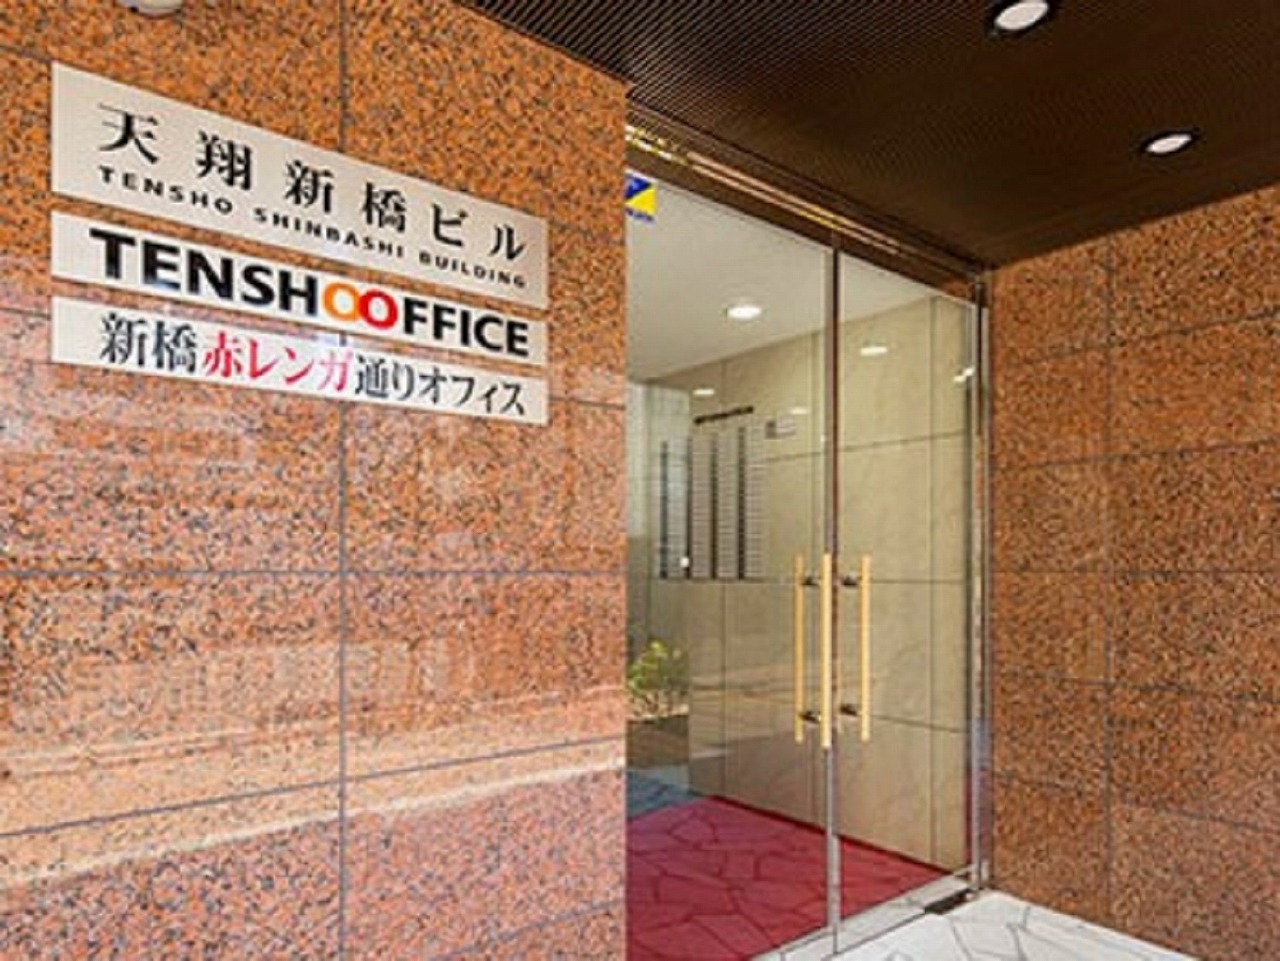 外観_新橋駅徒歩3分の利便性に優れたオフィスです。